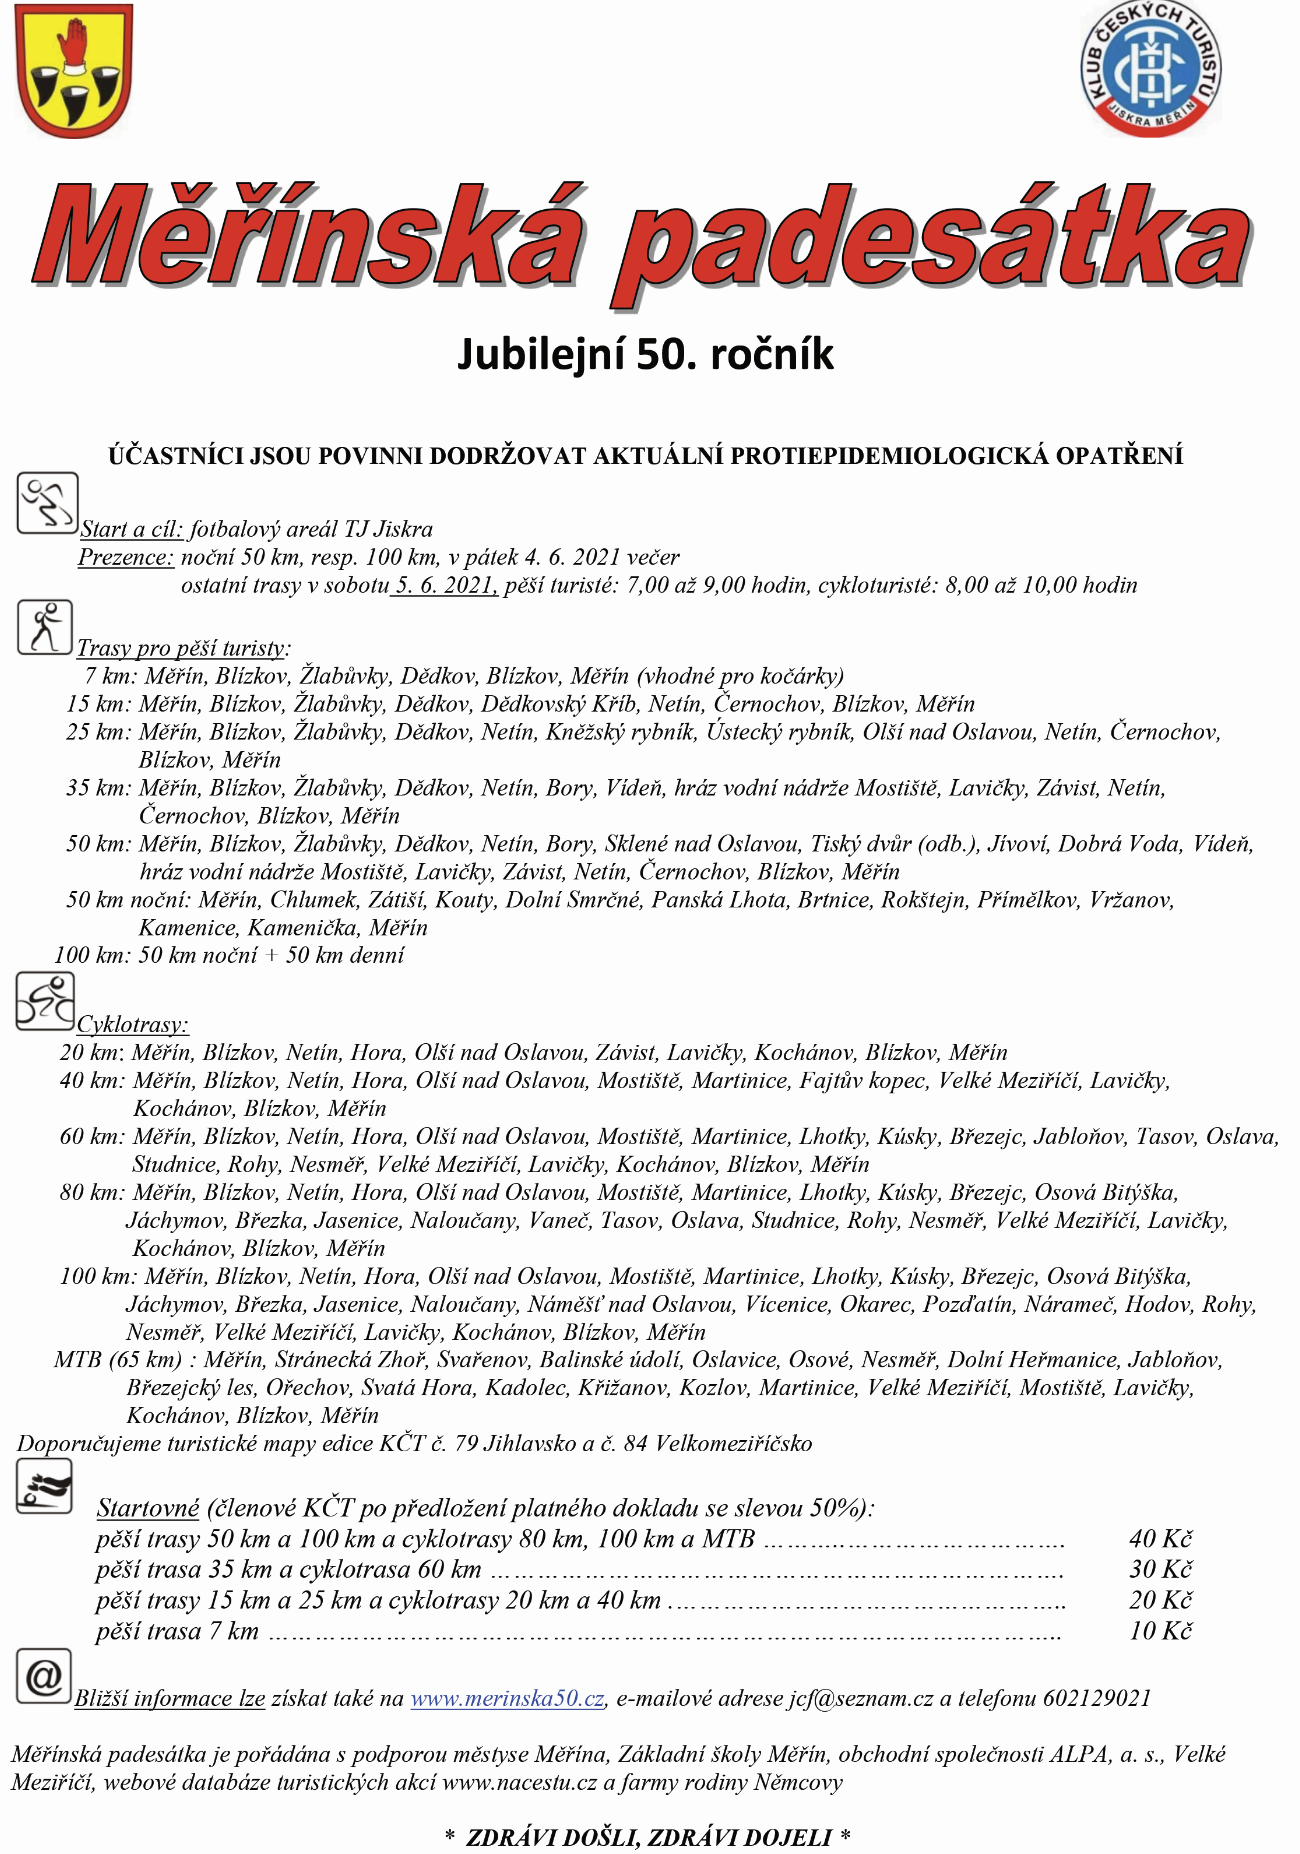 Letošní jubilejní padesátá Měřínská padesátka se uskuteční v sobotu 5. června